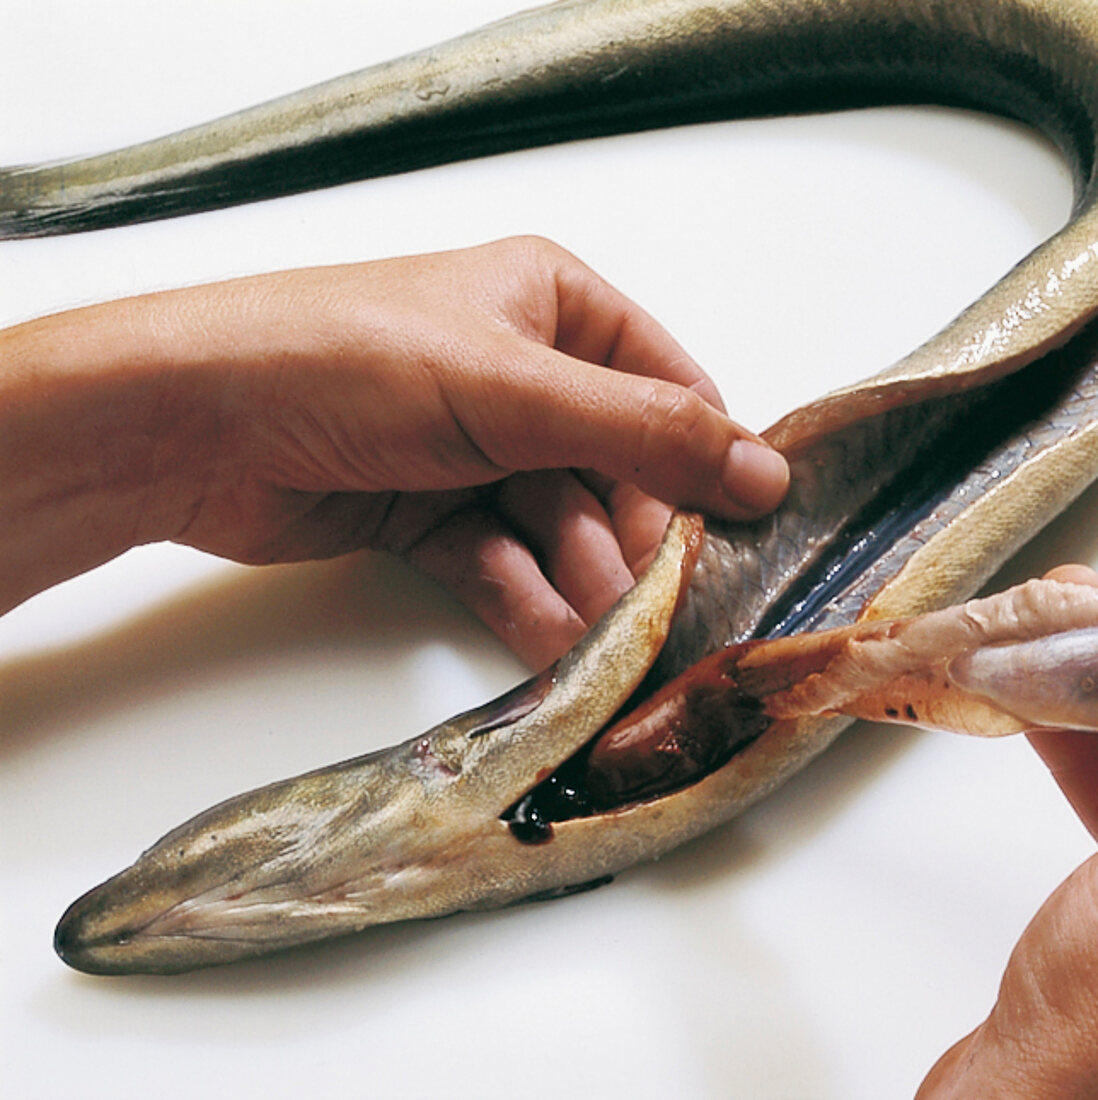 Fisch, Step 2: Aal ausnehmen, Niere entfernen